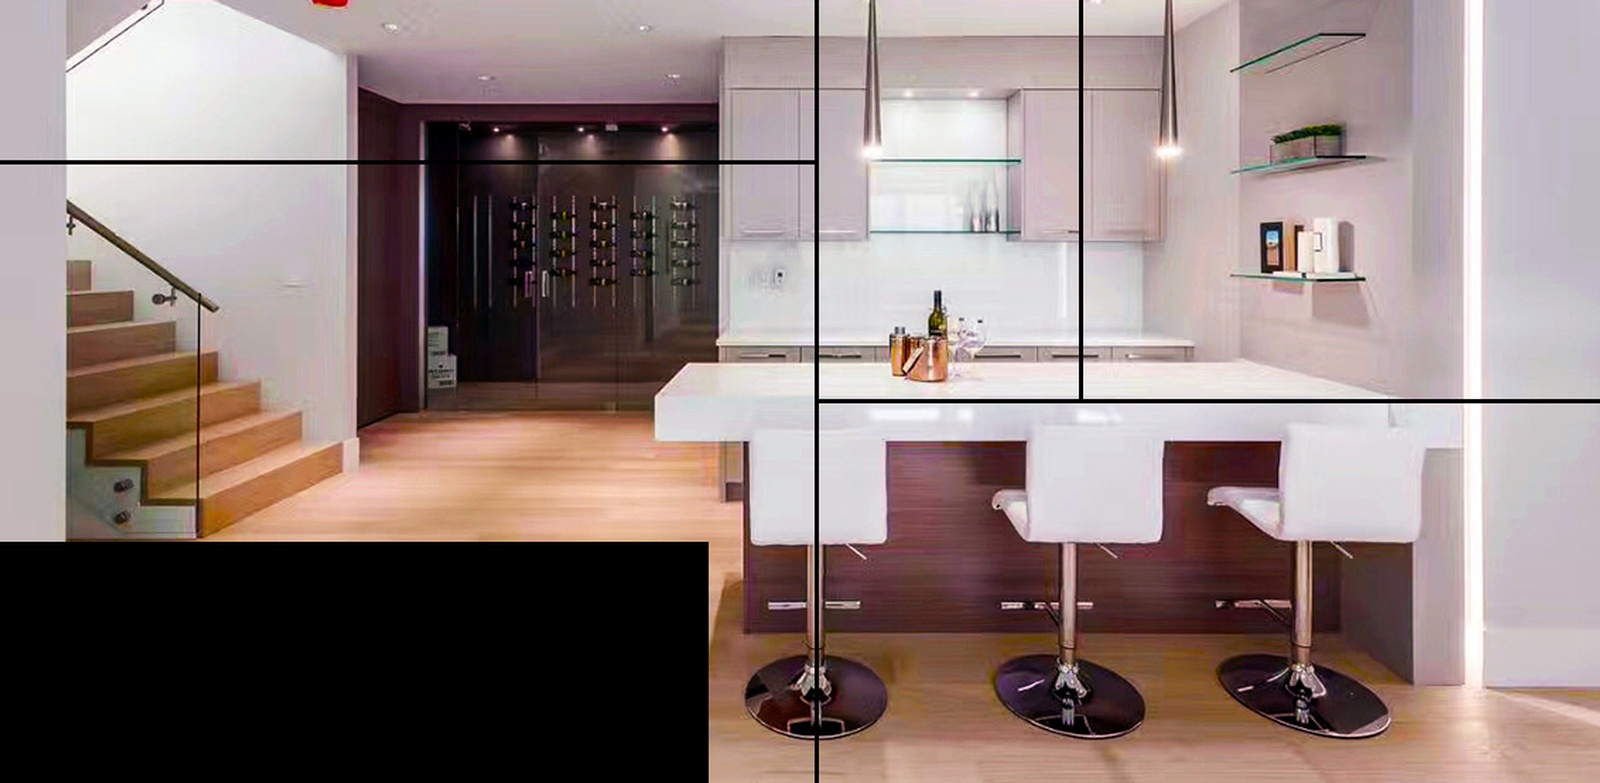 Engineered Hardwood Kitchen Flooring Services Vancouver by TJL Floor And Garage Door Inc